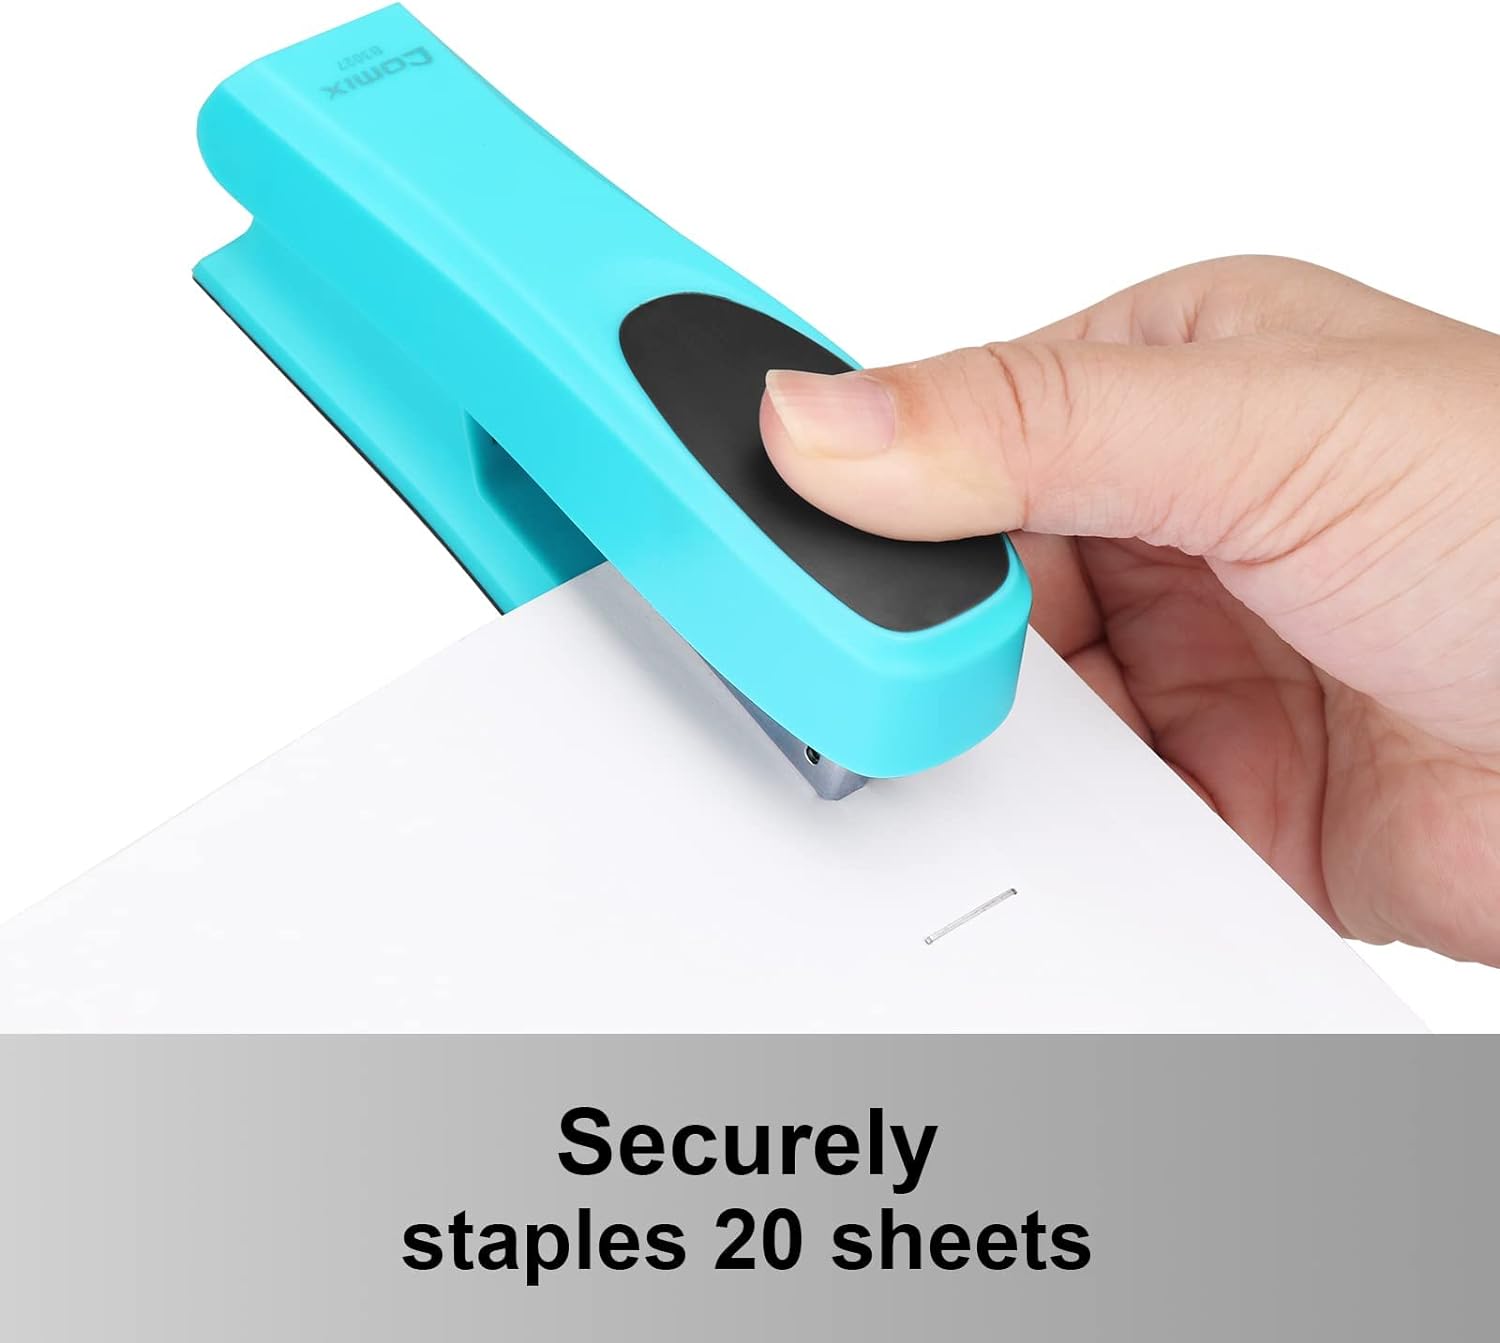 Comix Desktop Stapler,20 Sheets Capacity Commercial Desk Stapler